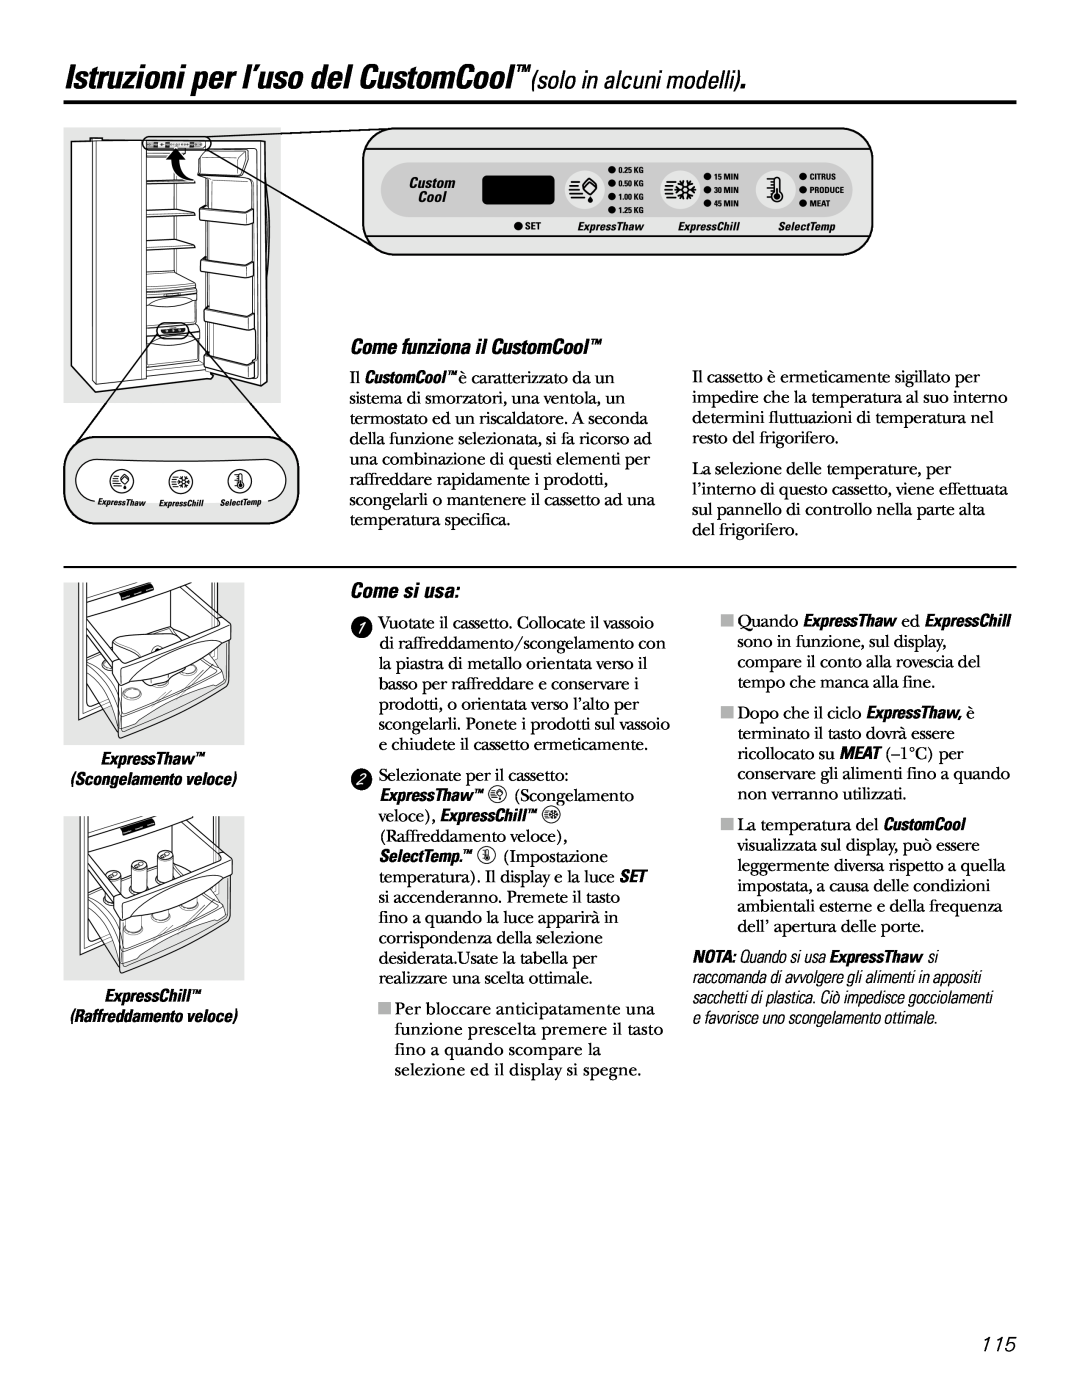 GE 21, 23, 25, 27, 29 Istruzioni per l’uso del CustomCoolsolo in alcuni modelli, Come funziona il CustomCool, Come si usa 